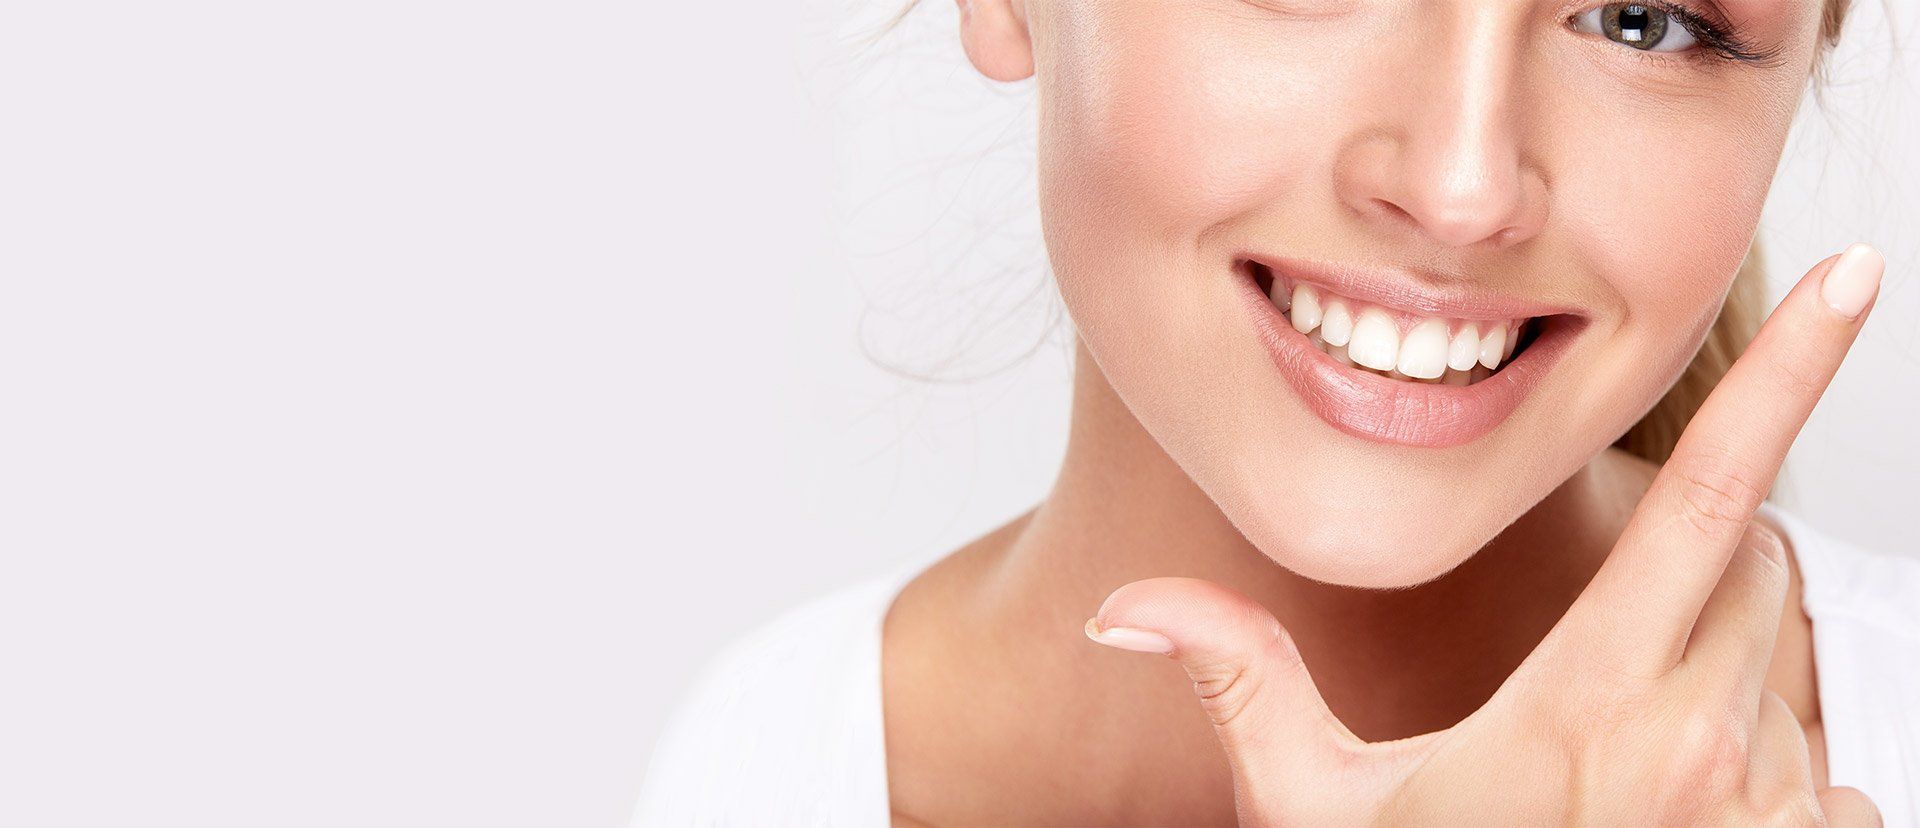 Gesunde Zähne und gesundes Zahnfleisch mit Prophylaxe und Professioneller Zahnreinigung (PZR)